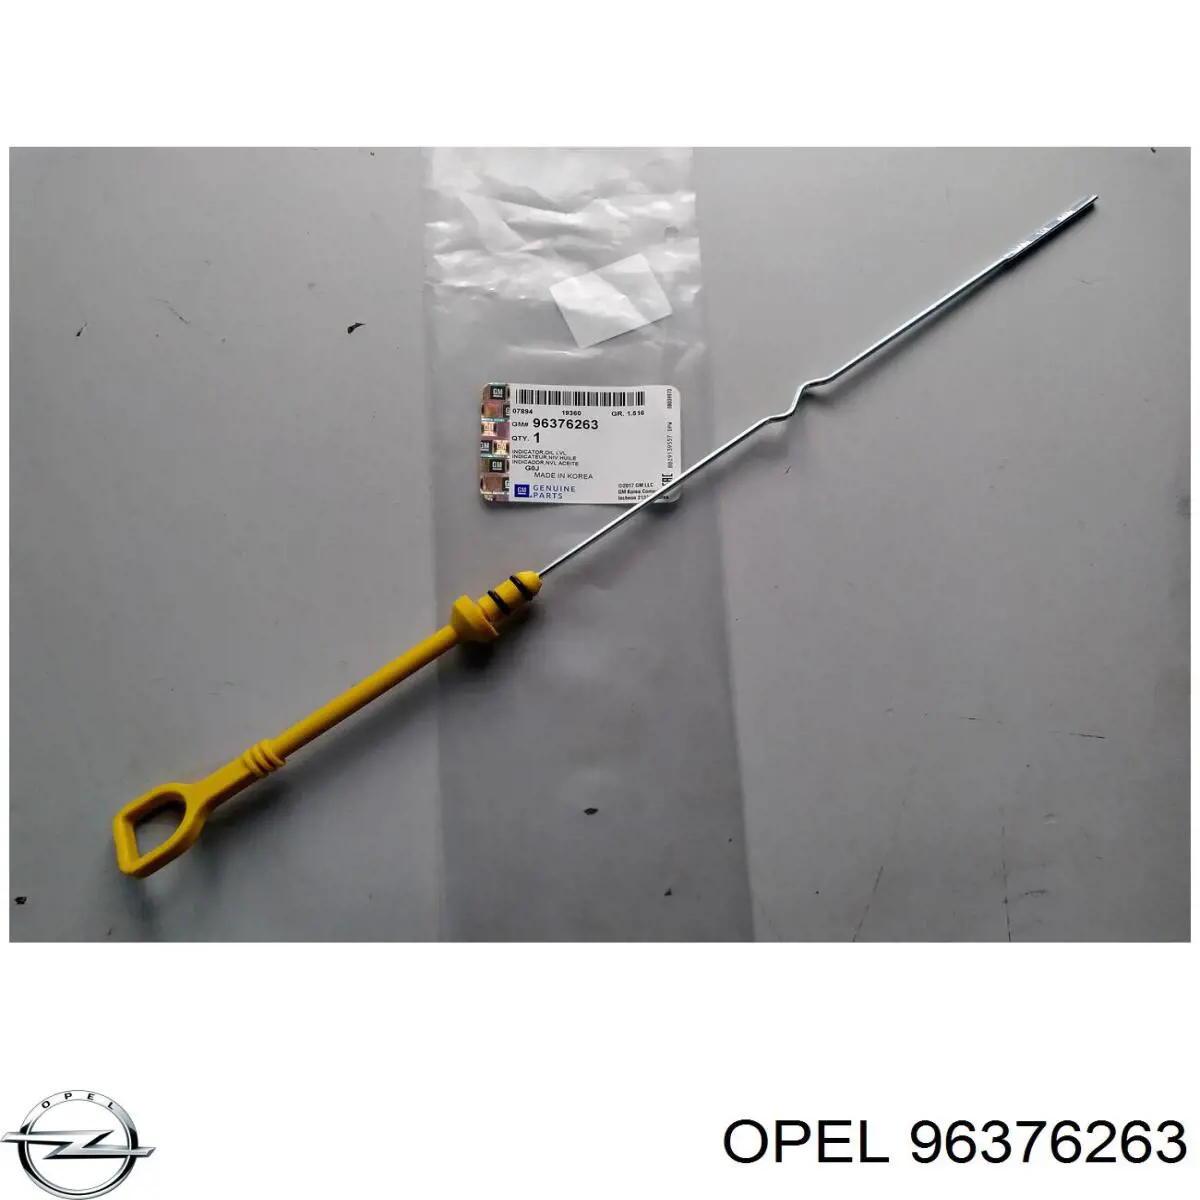 96376263 Opel sonda (indicador do nível de óleo no motor)